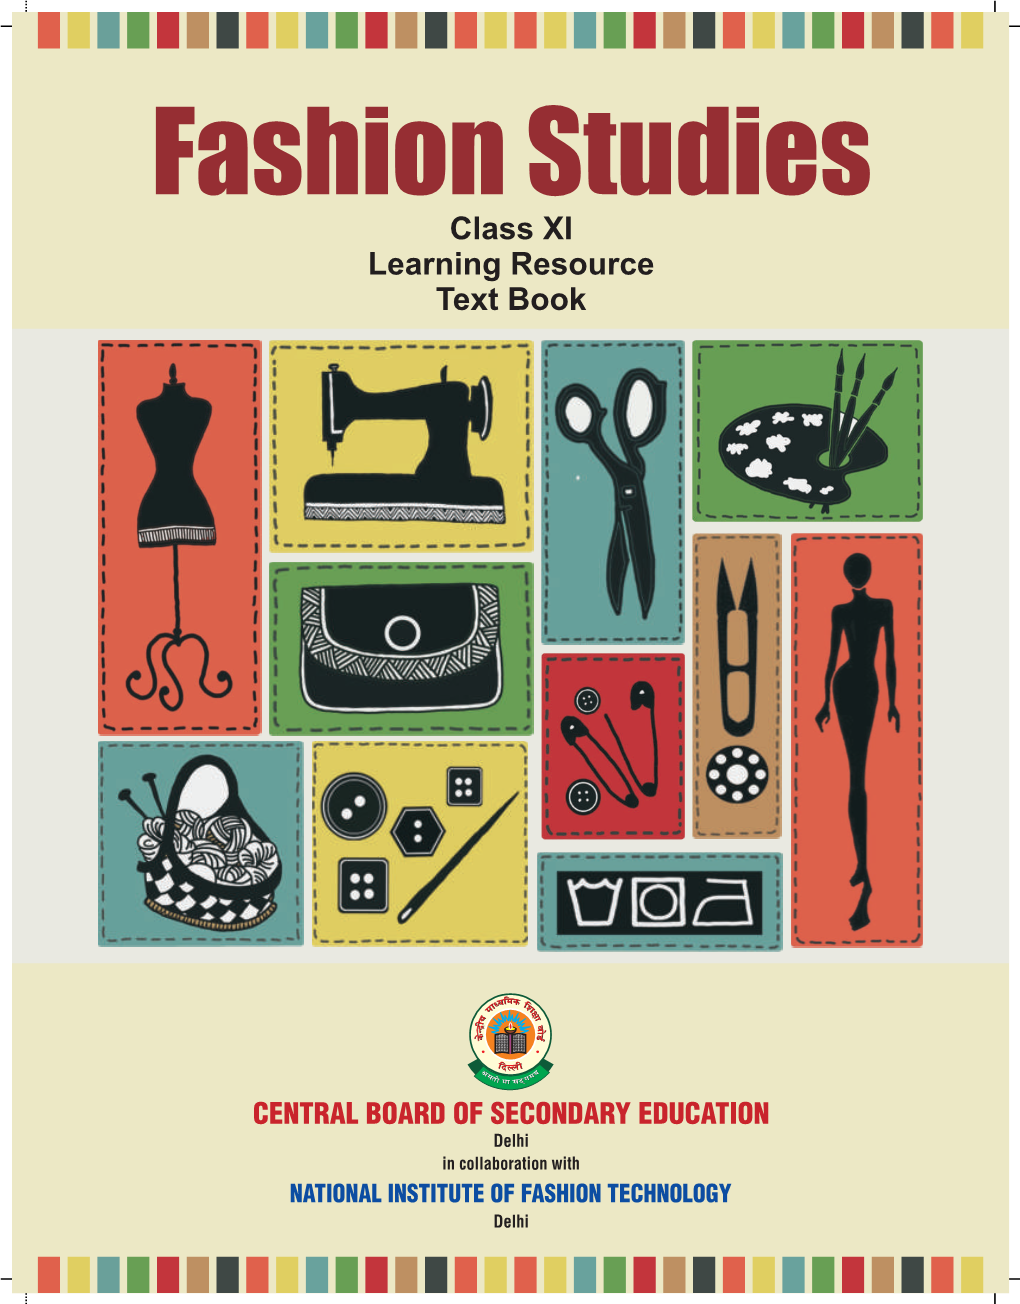 Fashion Studies Textbook